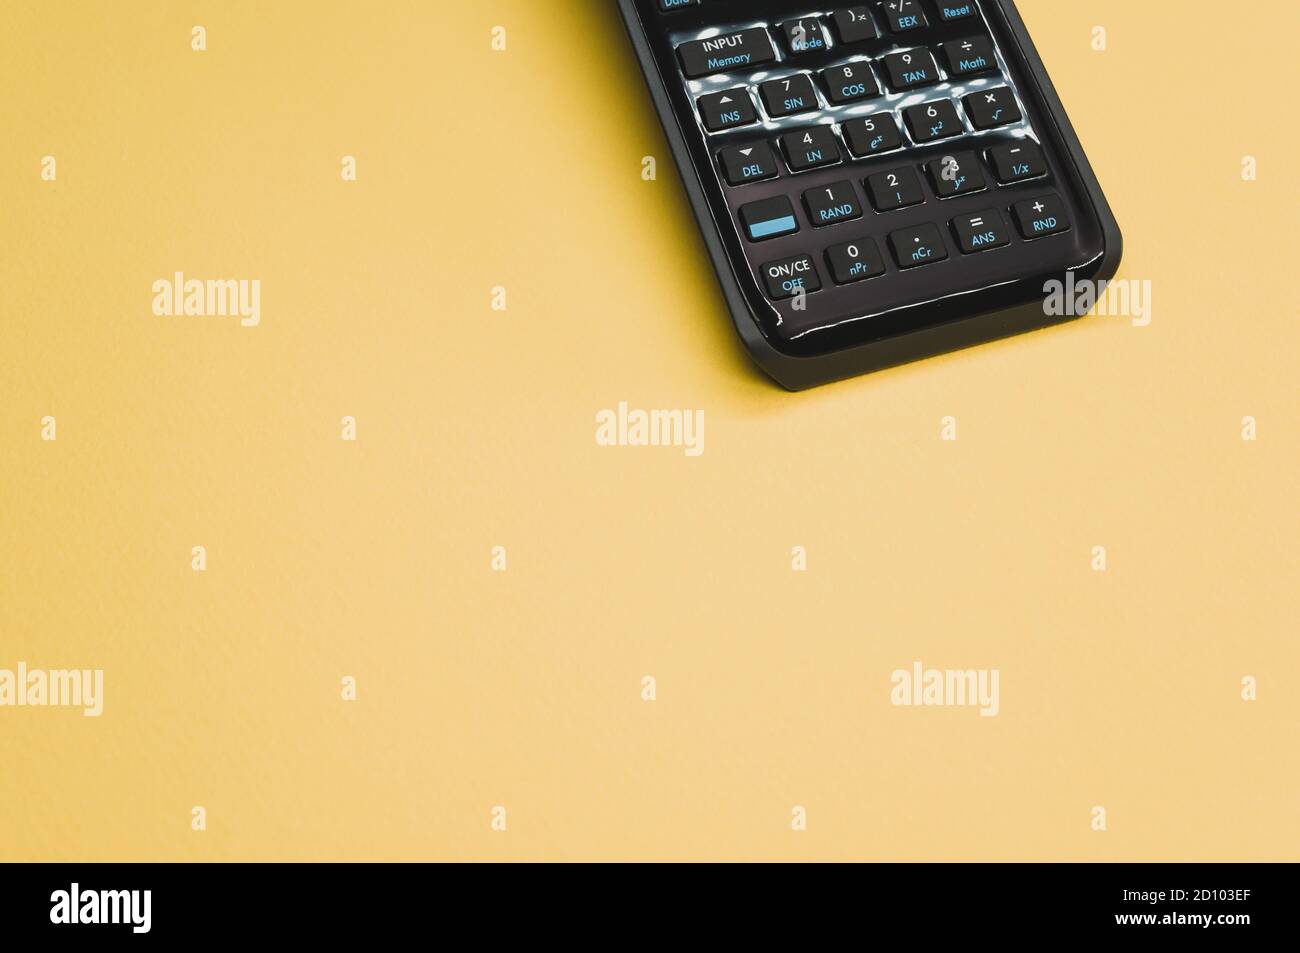 Calcolatrice scientifica su sfondo giallo pastello con spazio vuoto per un  testo Foto stock - Alamy